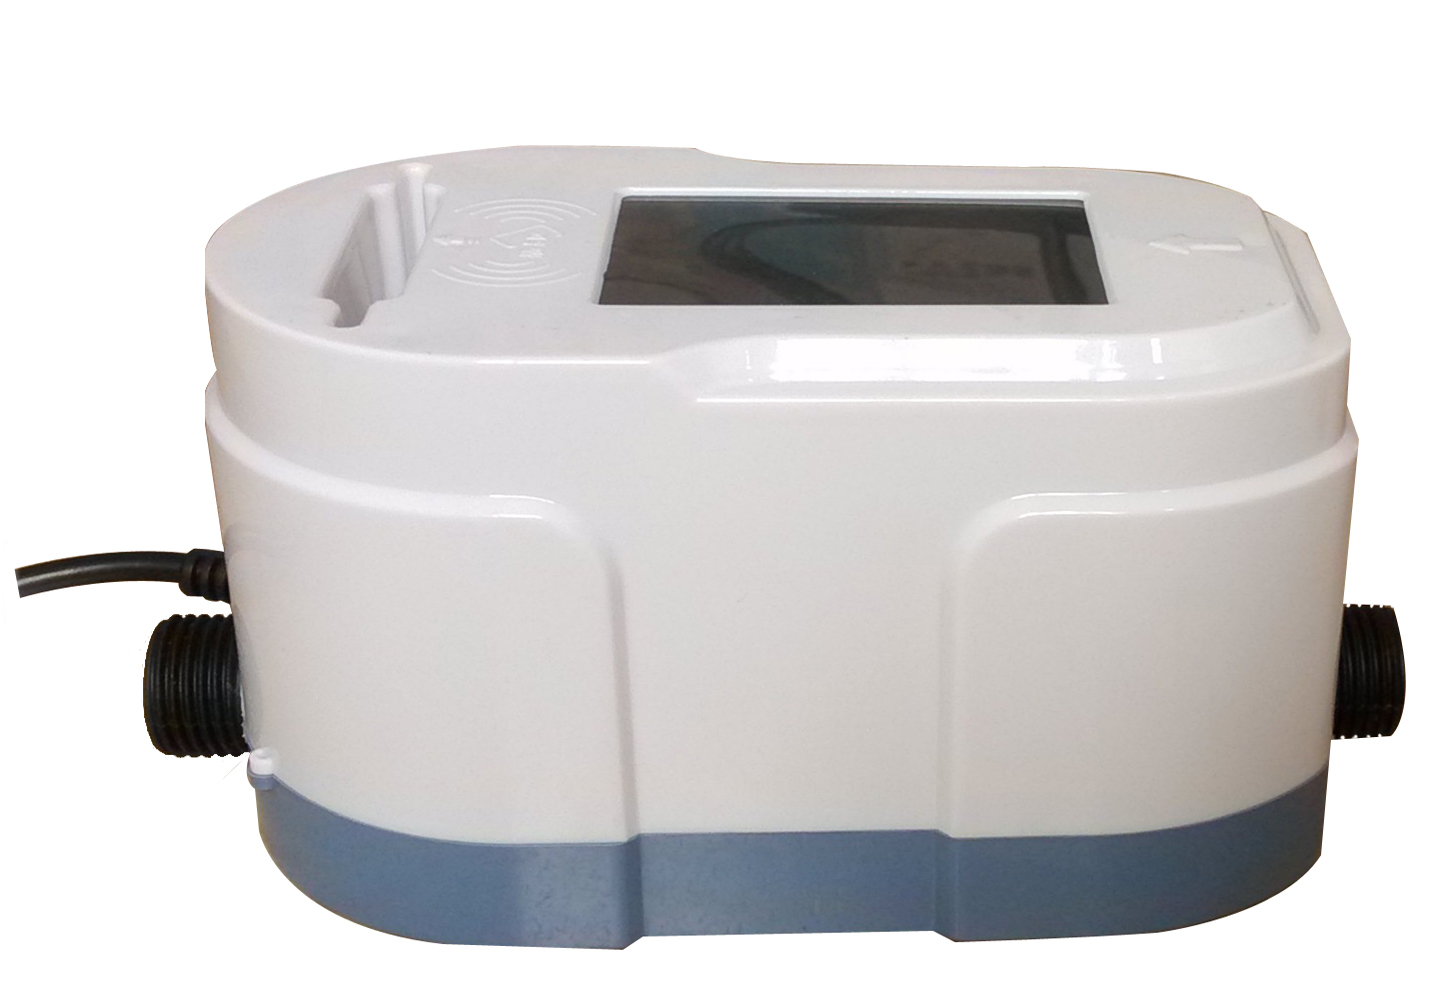 供应一卡通水控机IC卡澡堂淋浴刷卡机、浴室节水控制器、脱机水控机图片